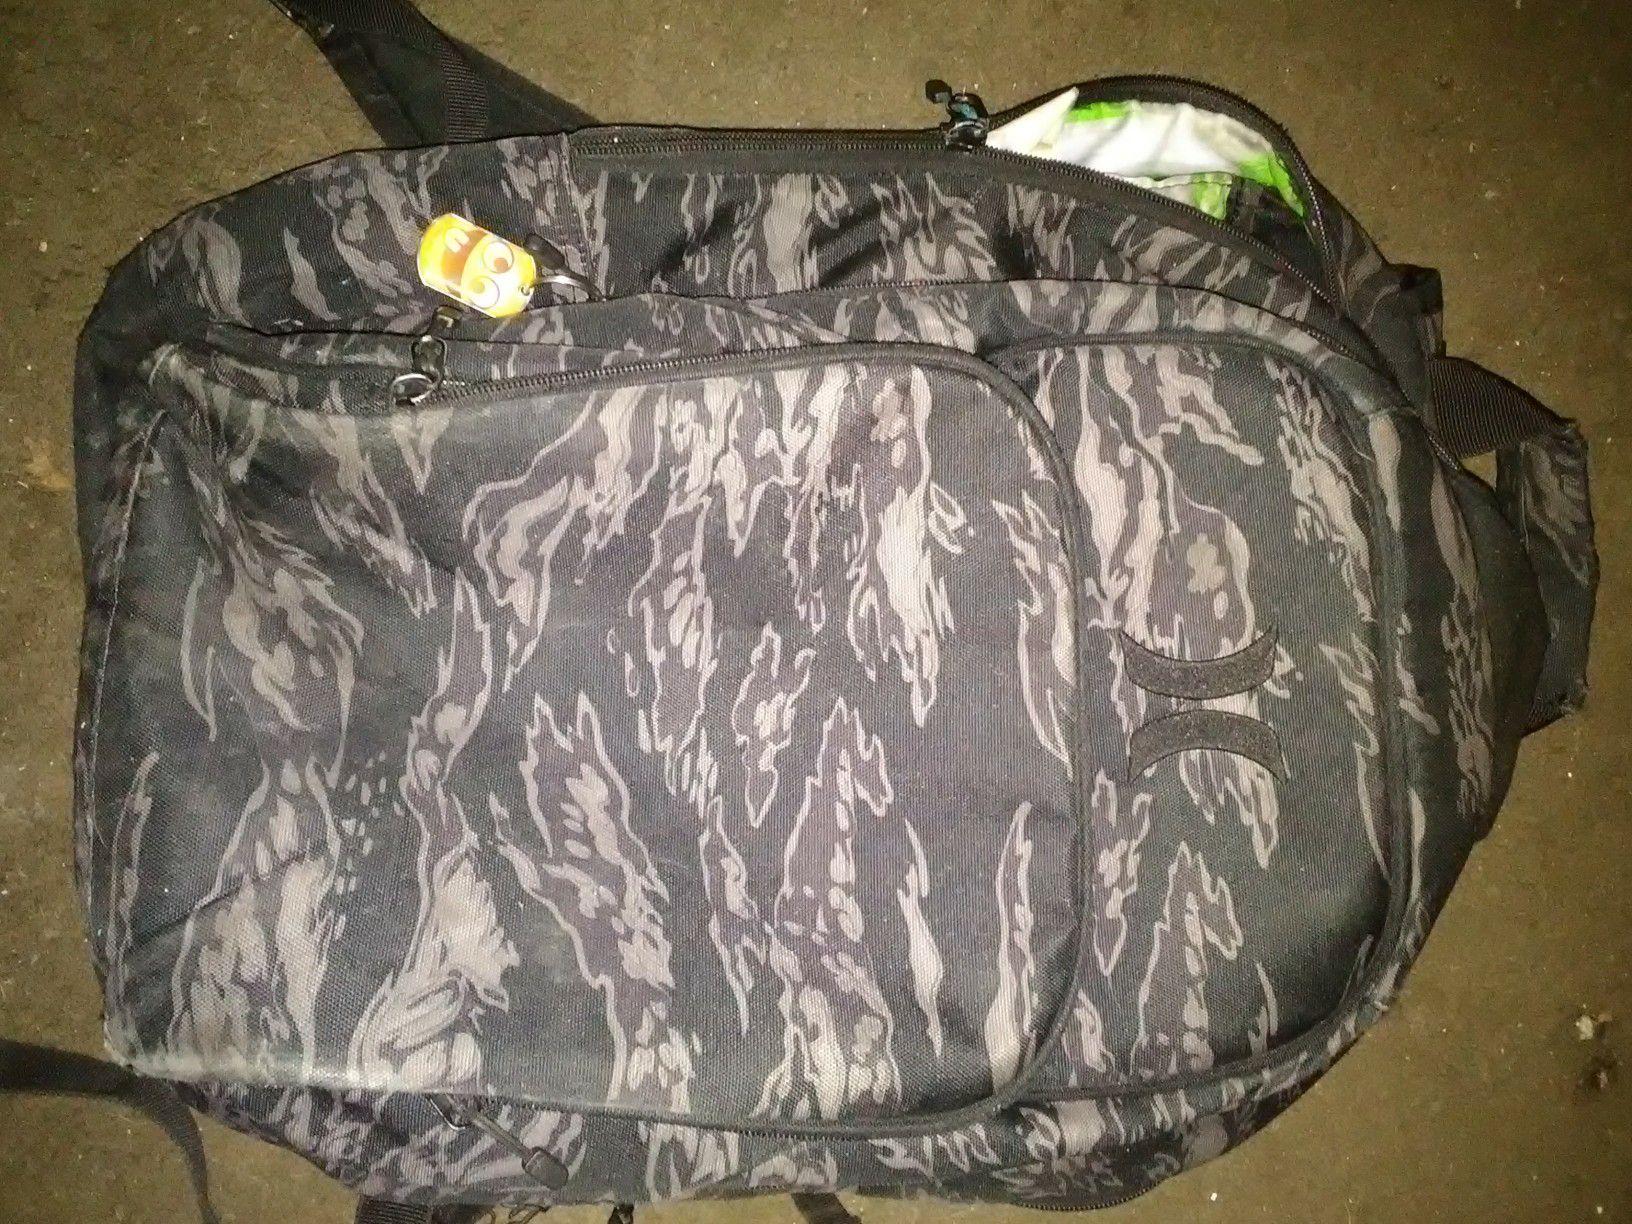 Hurley backpack